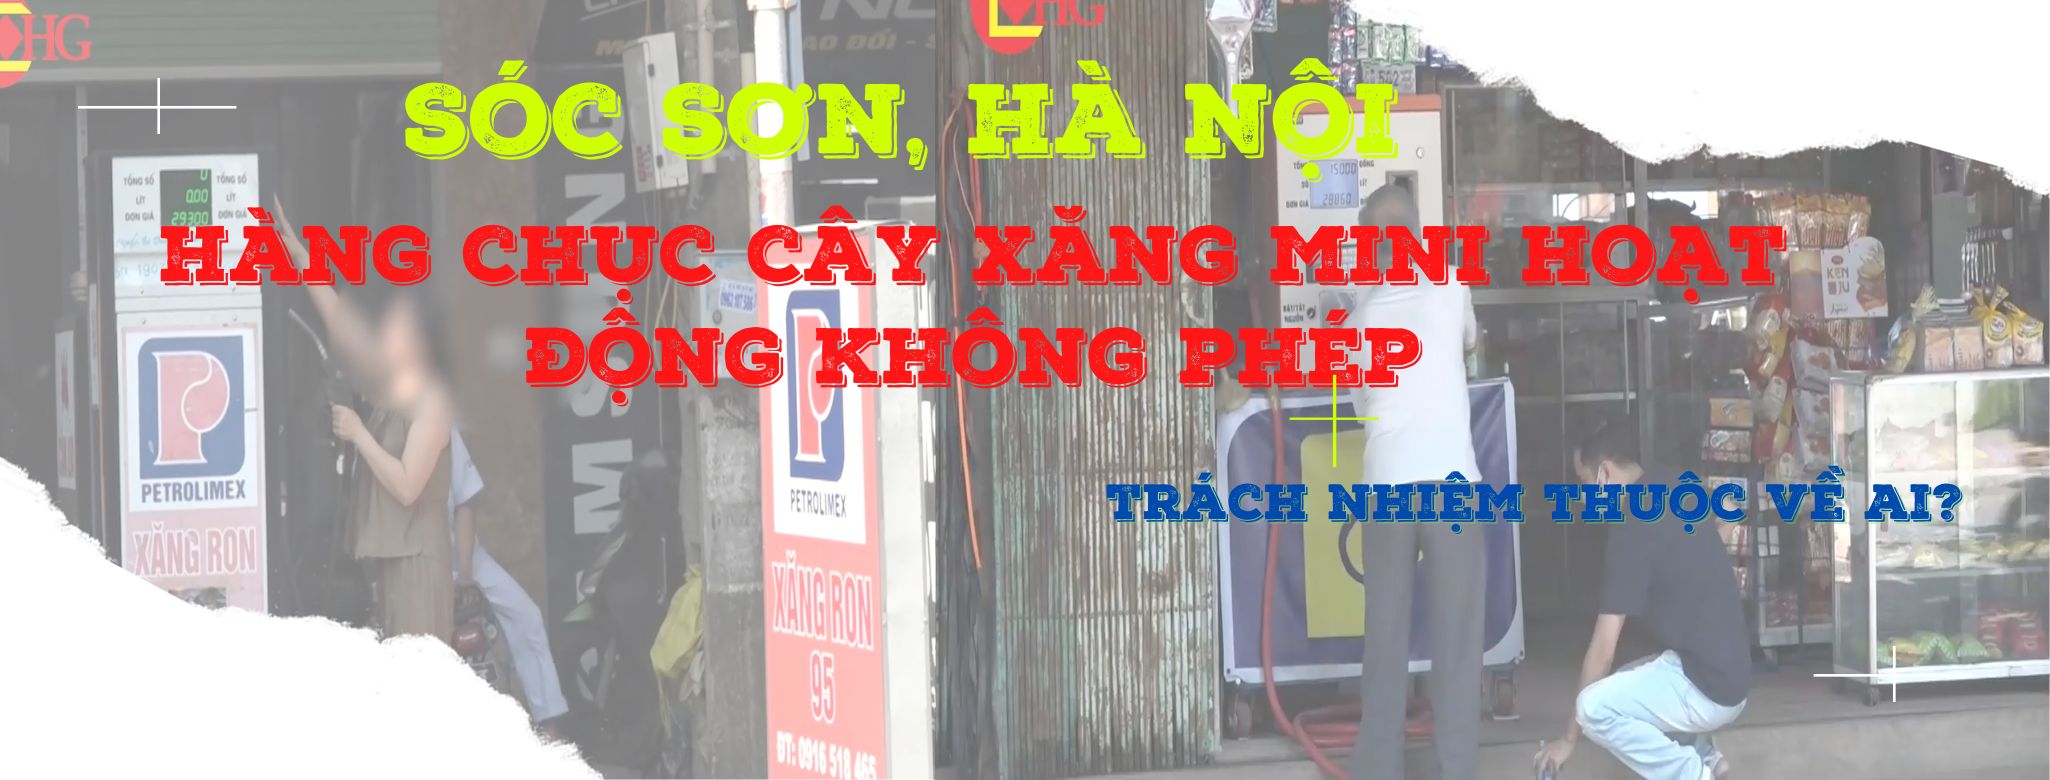 Sóc Sơn, Hà Nội: Hàng chục cây xăng mini hoạt động không phép, trách nhiệm thuộc về ai?